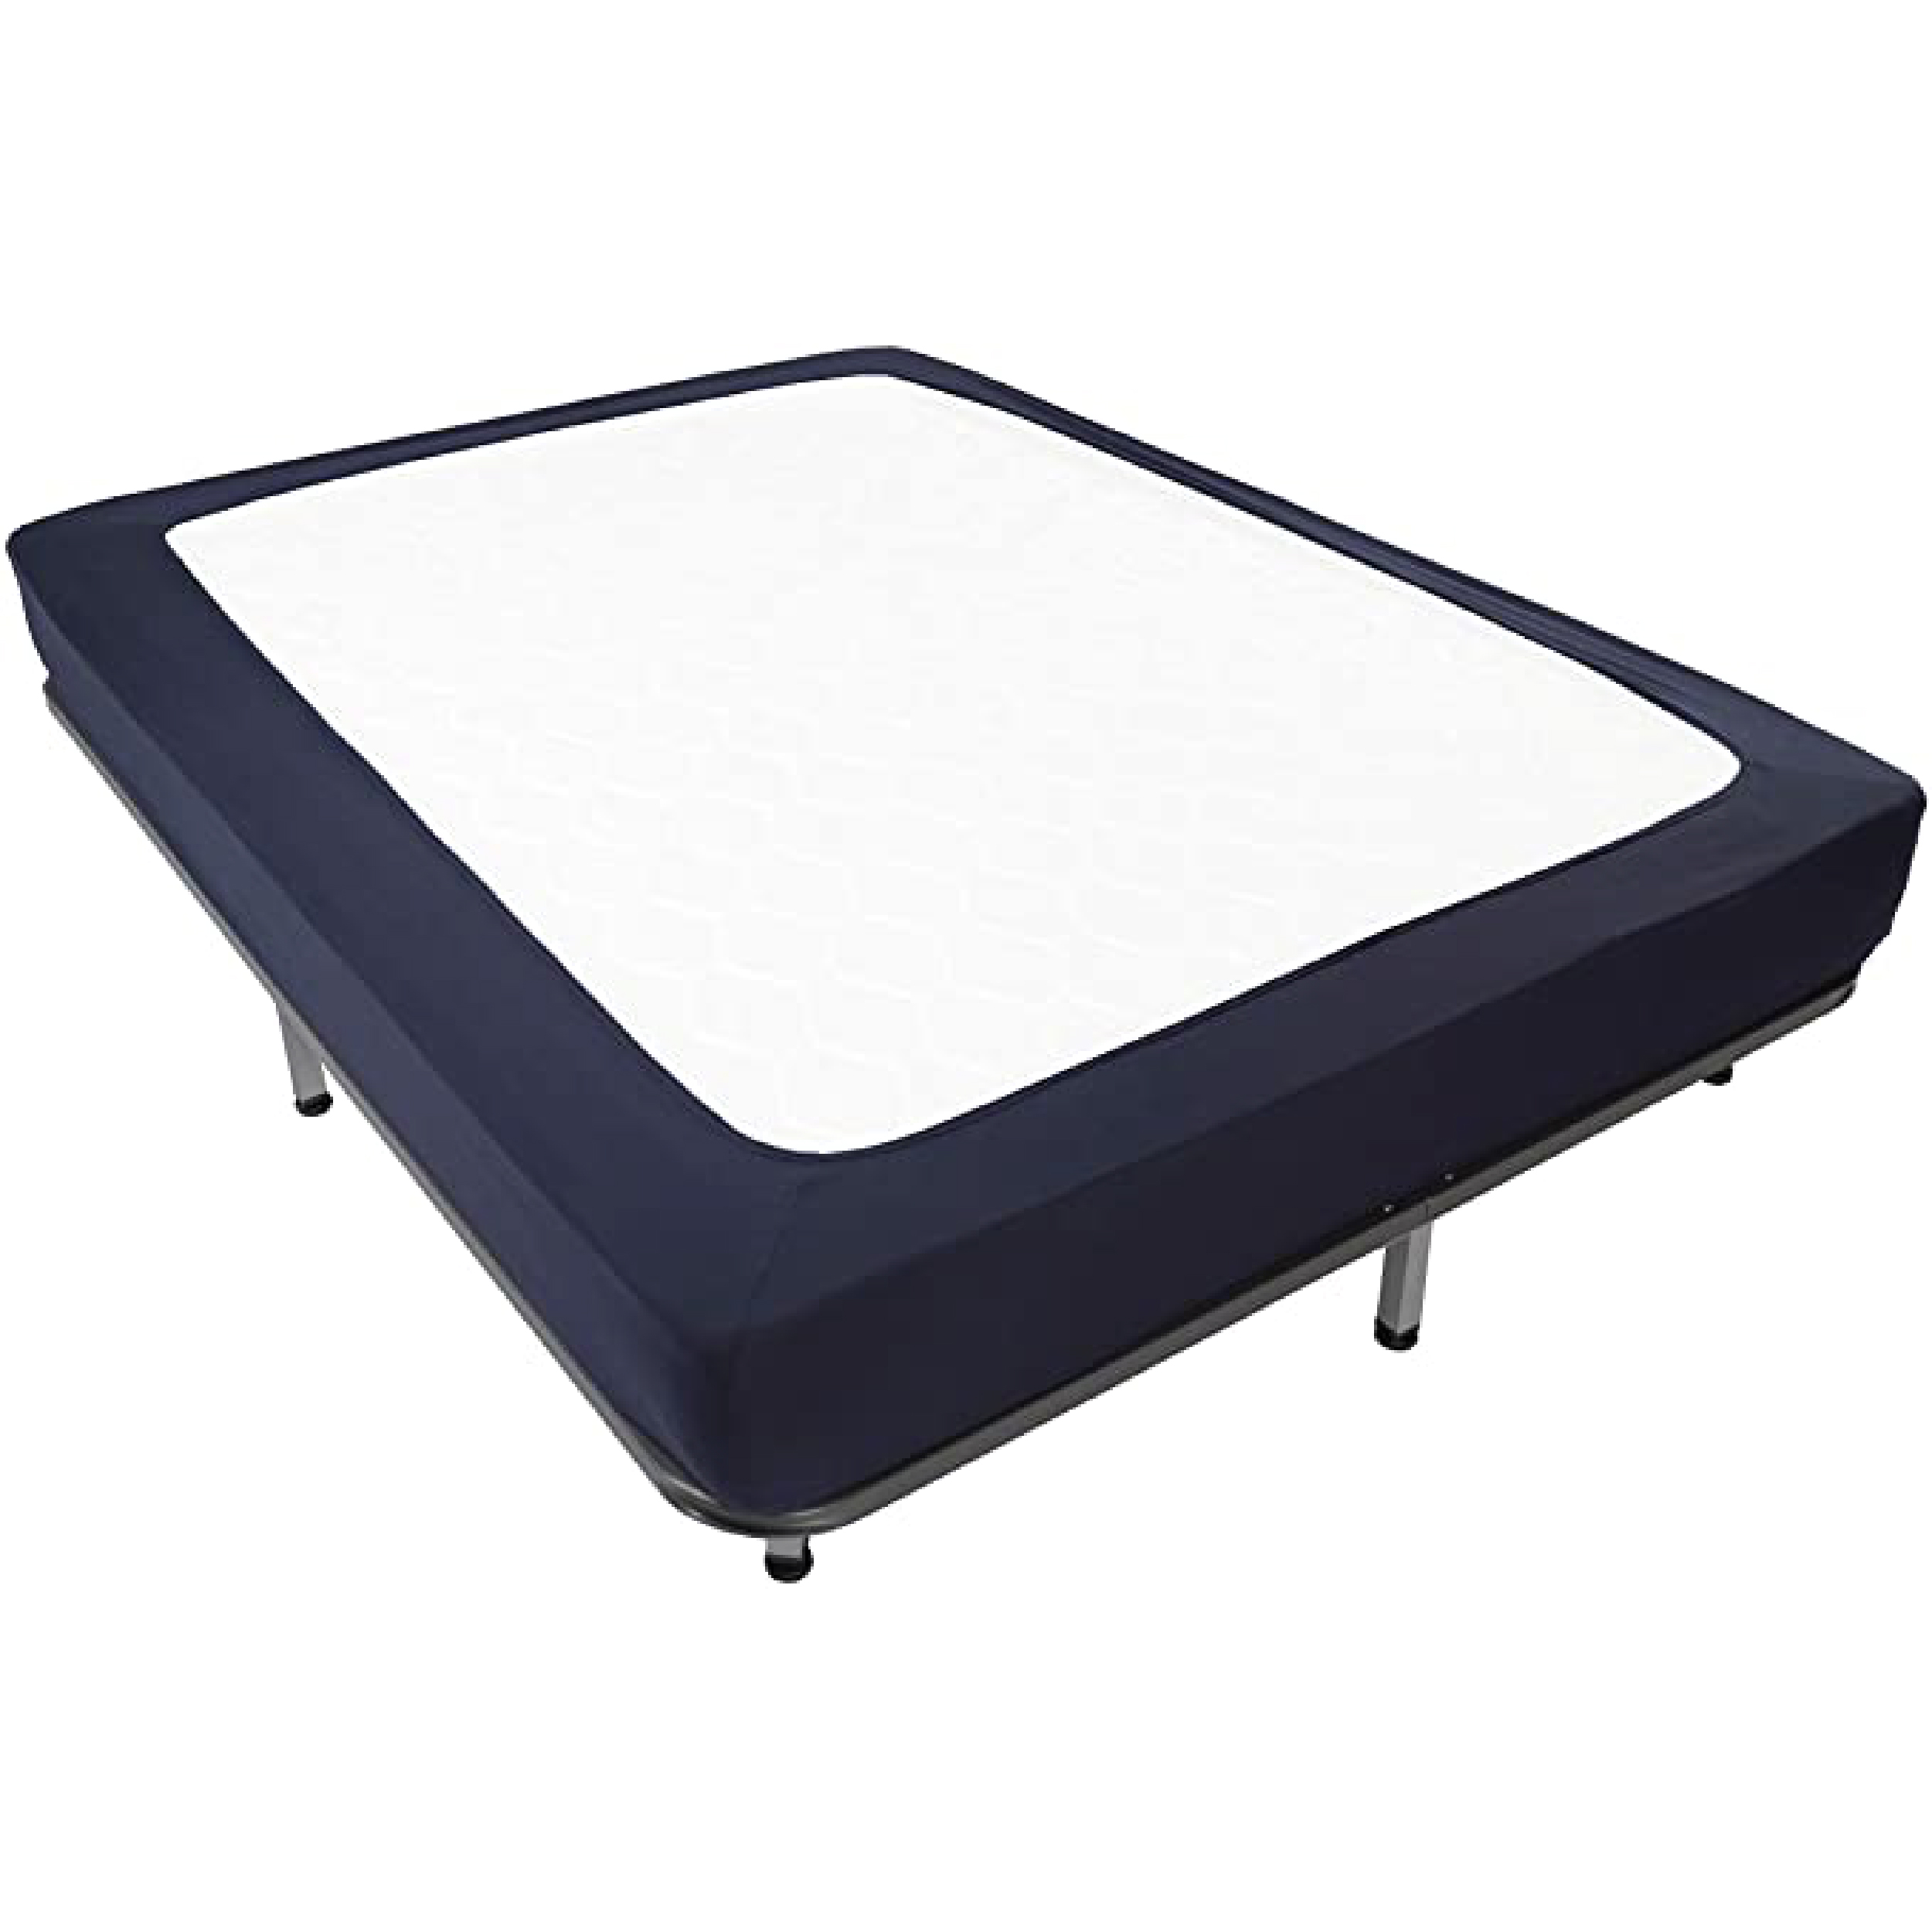 Cobertor para base de cama FIT – Proconisa